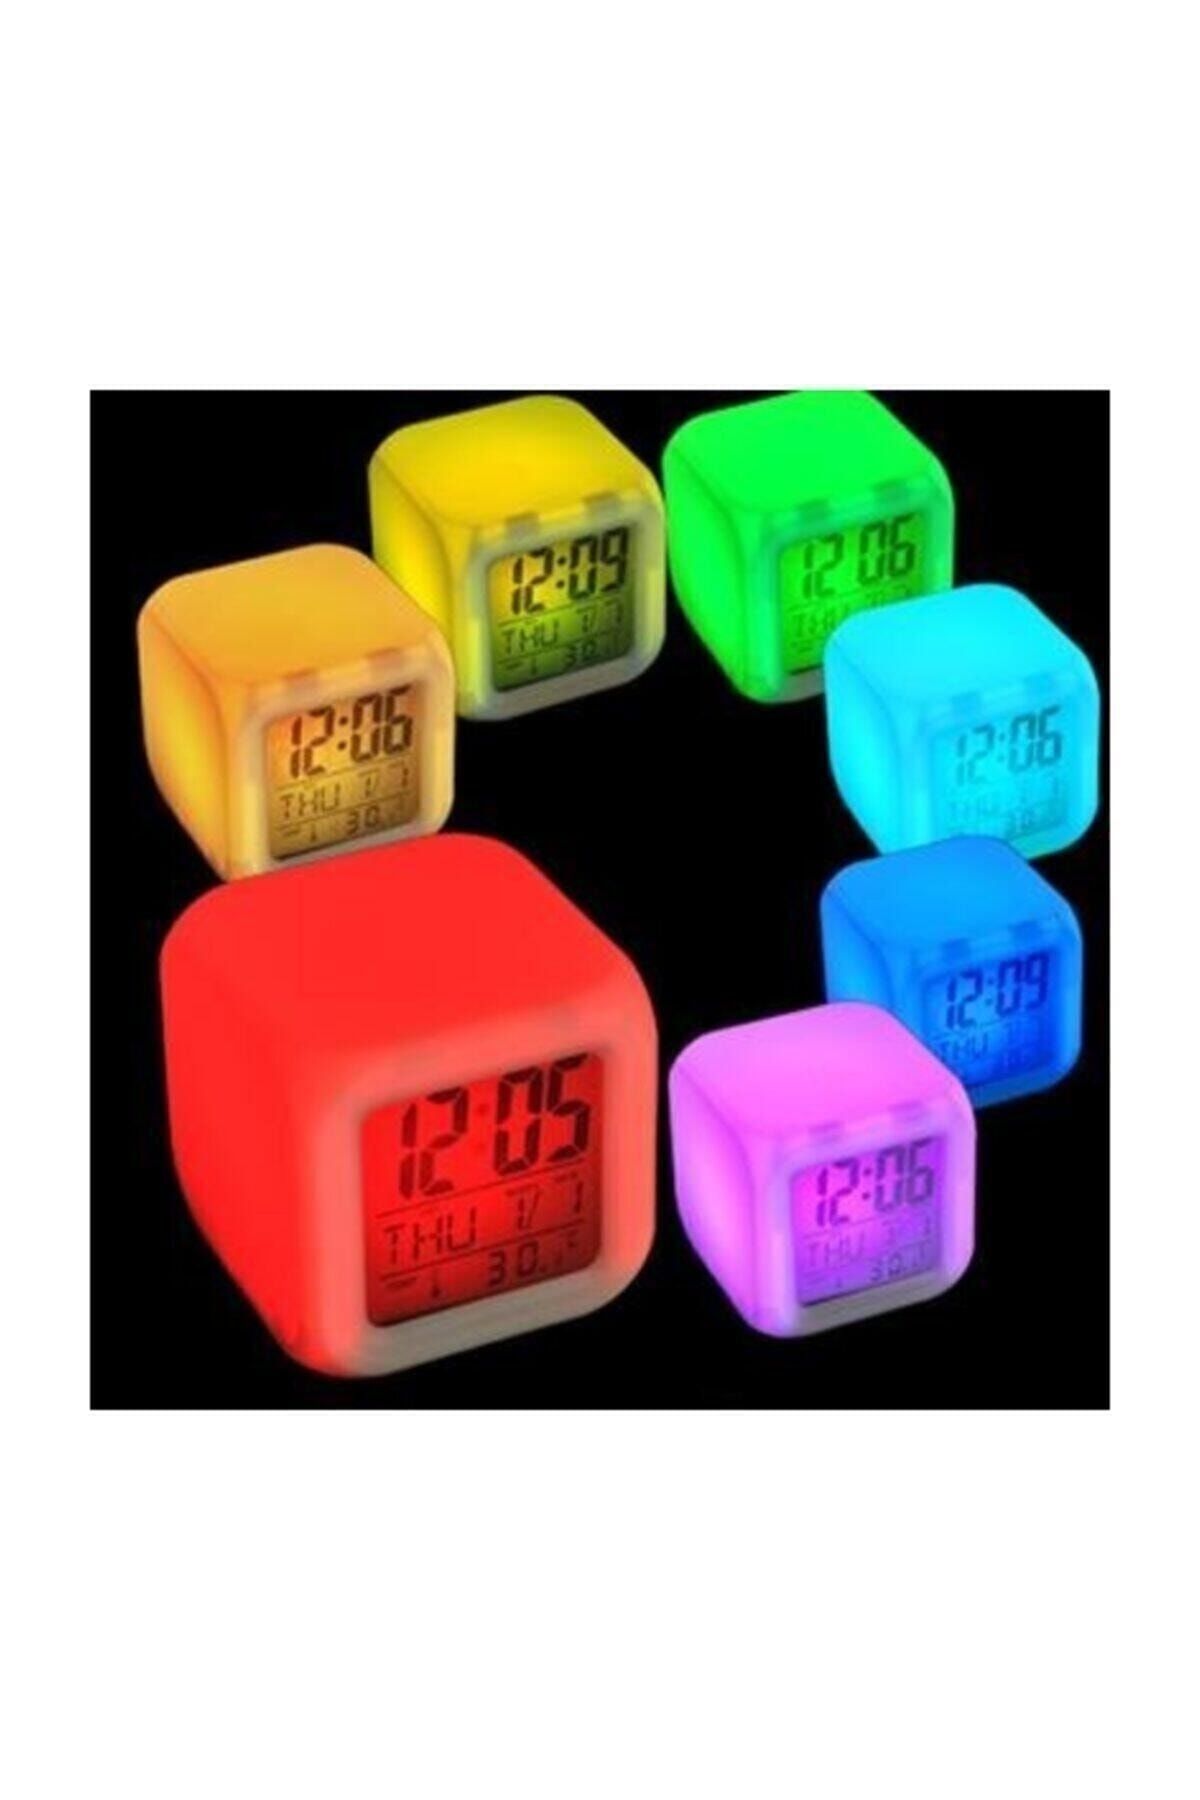 CMT Çalar Masa Renk Değiştiren Küp Saat Alarm Clock Takvim